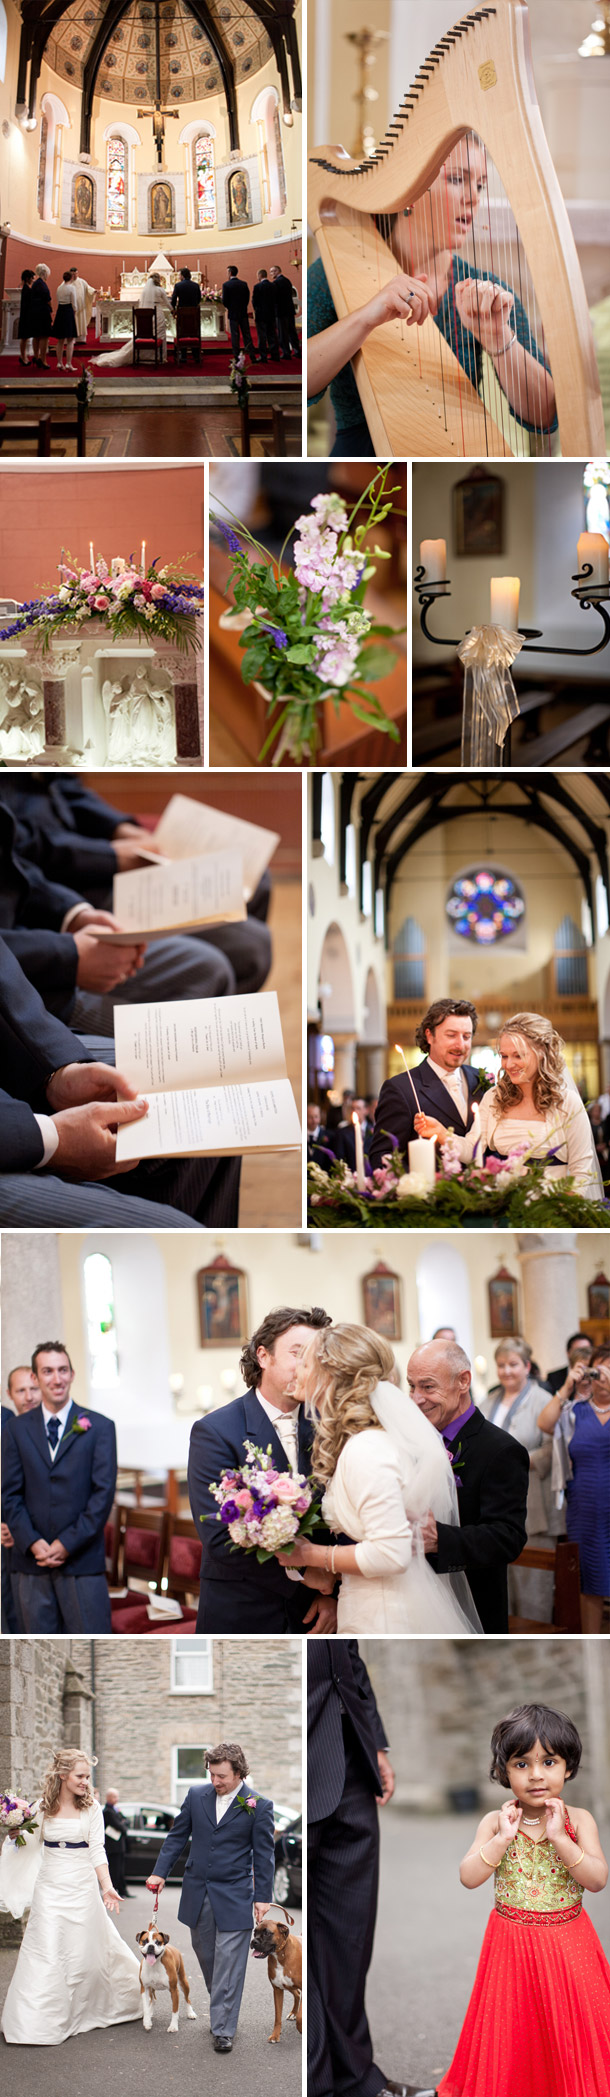 Österreichisch-Irische Hochzeit bei Lisa O'Dwyer Photography